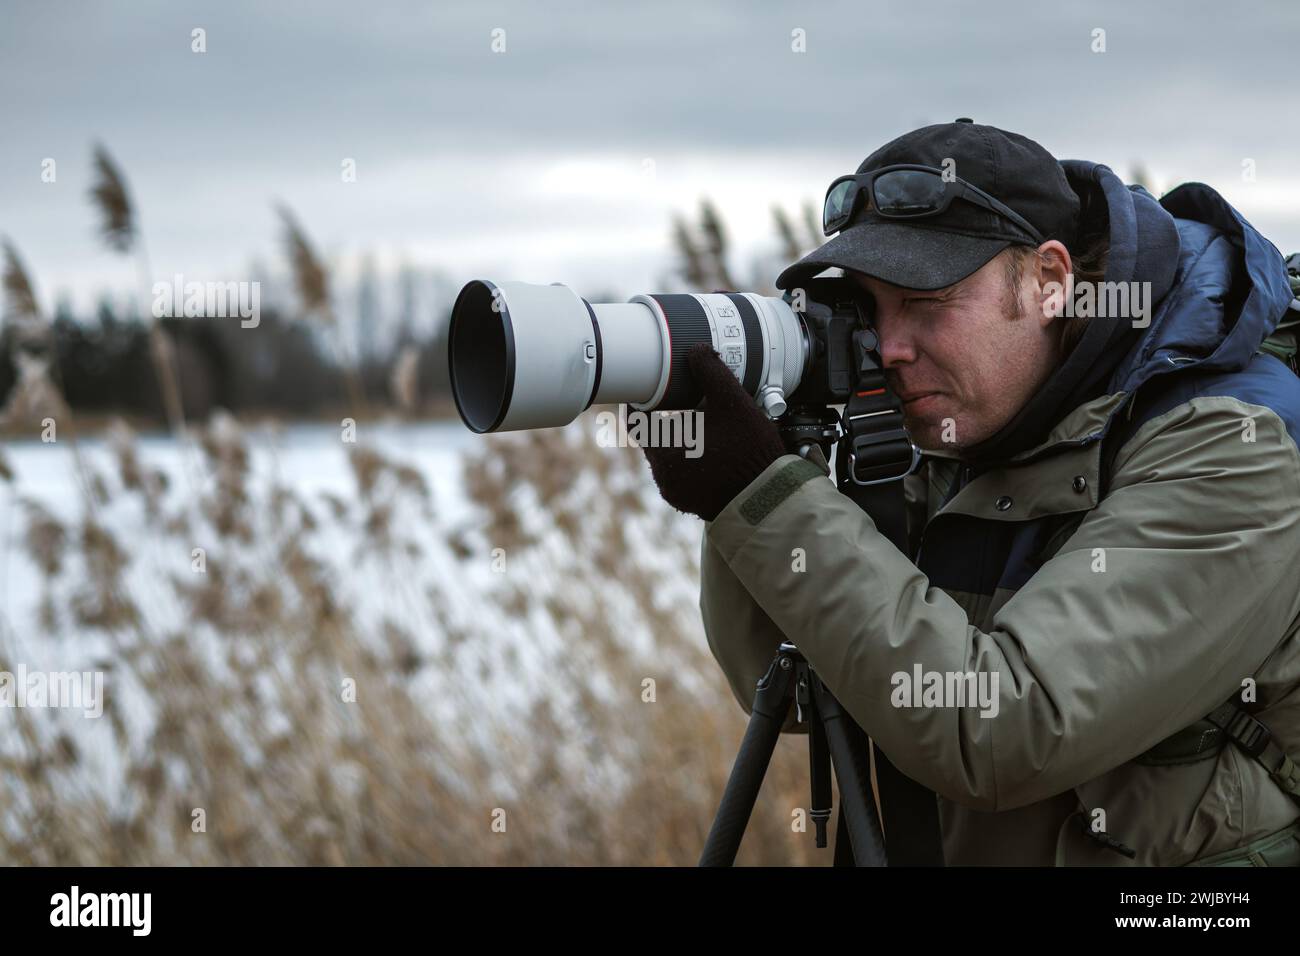 Photographe animalier installe l'appareil photo sur trépied à l'extérieur. Homme photographiant le paysage ou les animaux au lac en hiver. Observation des oiseaux Banque D'Images